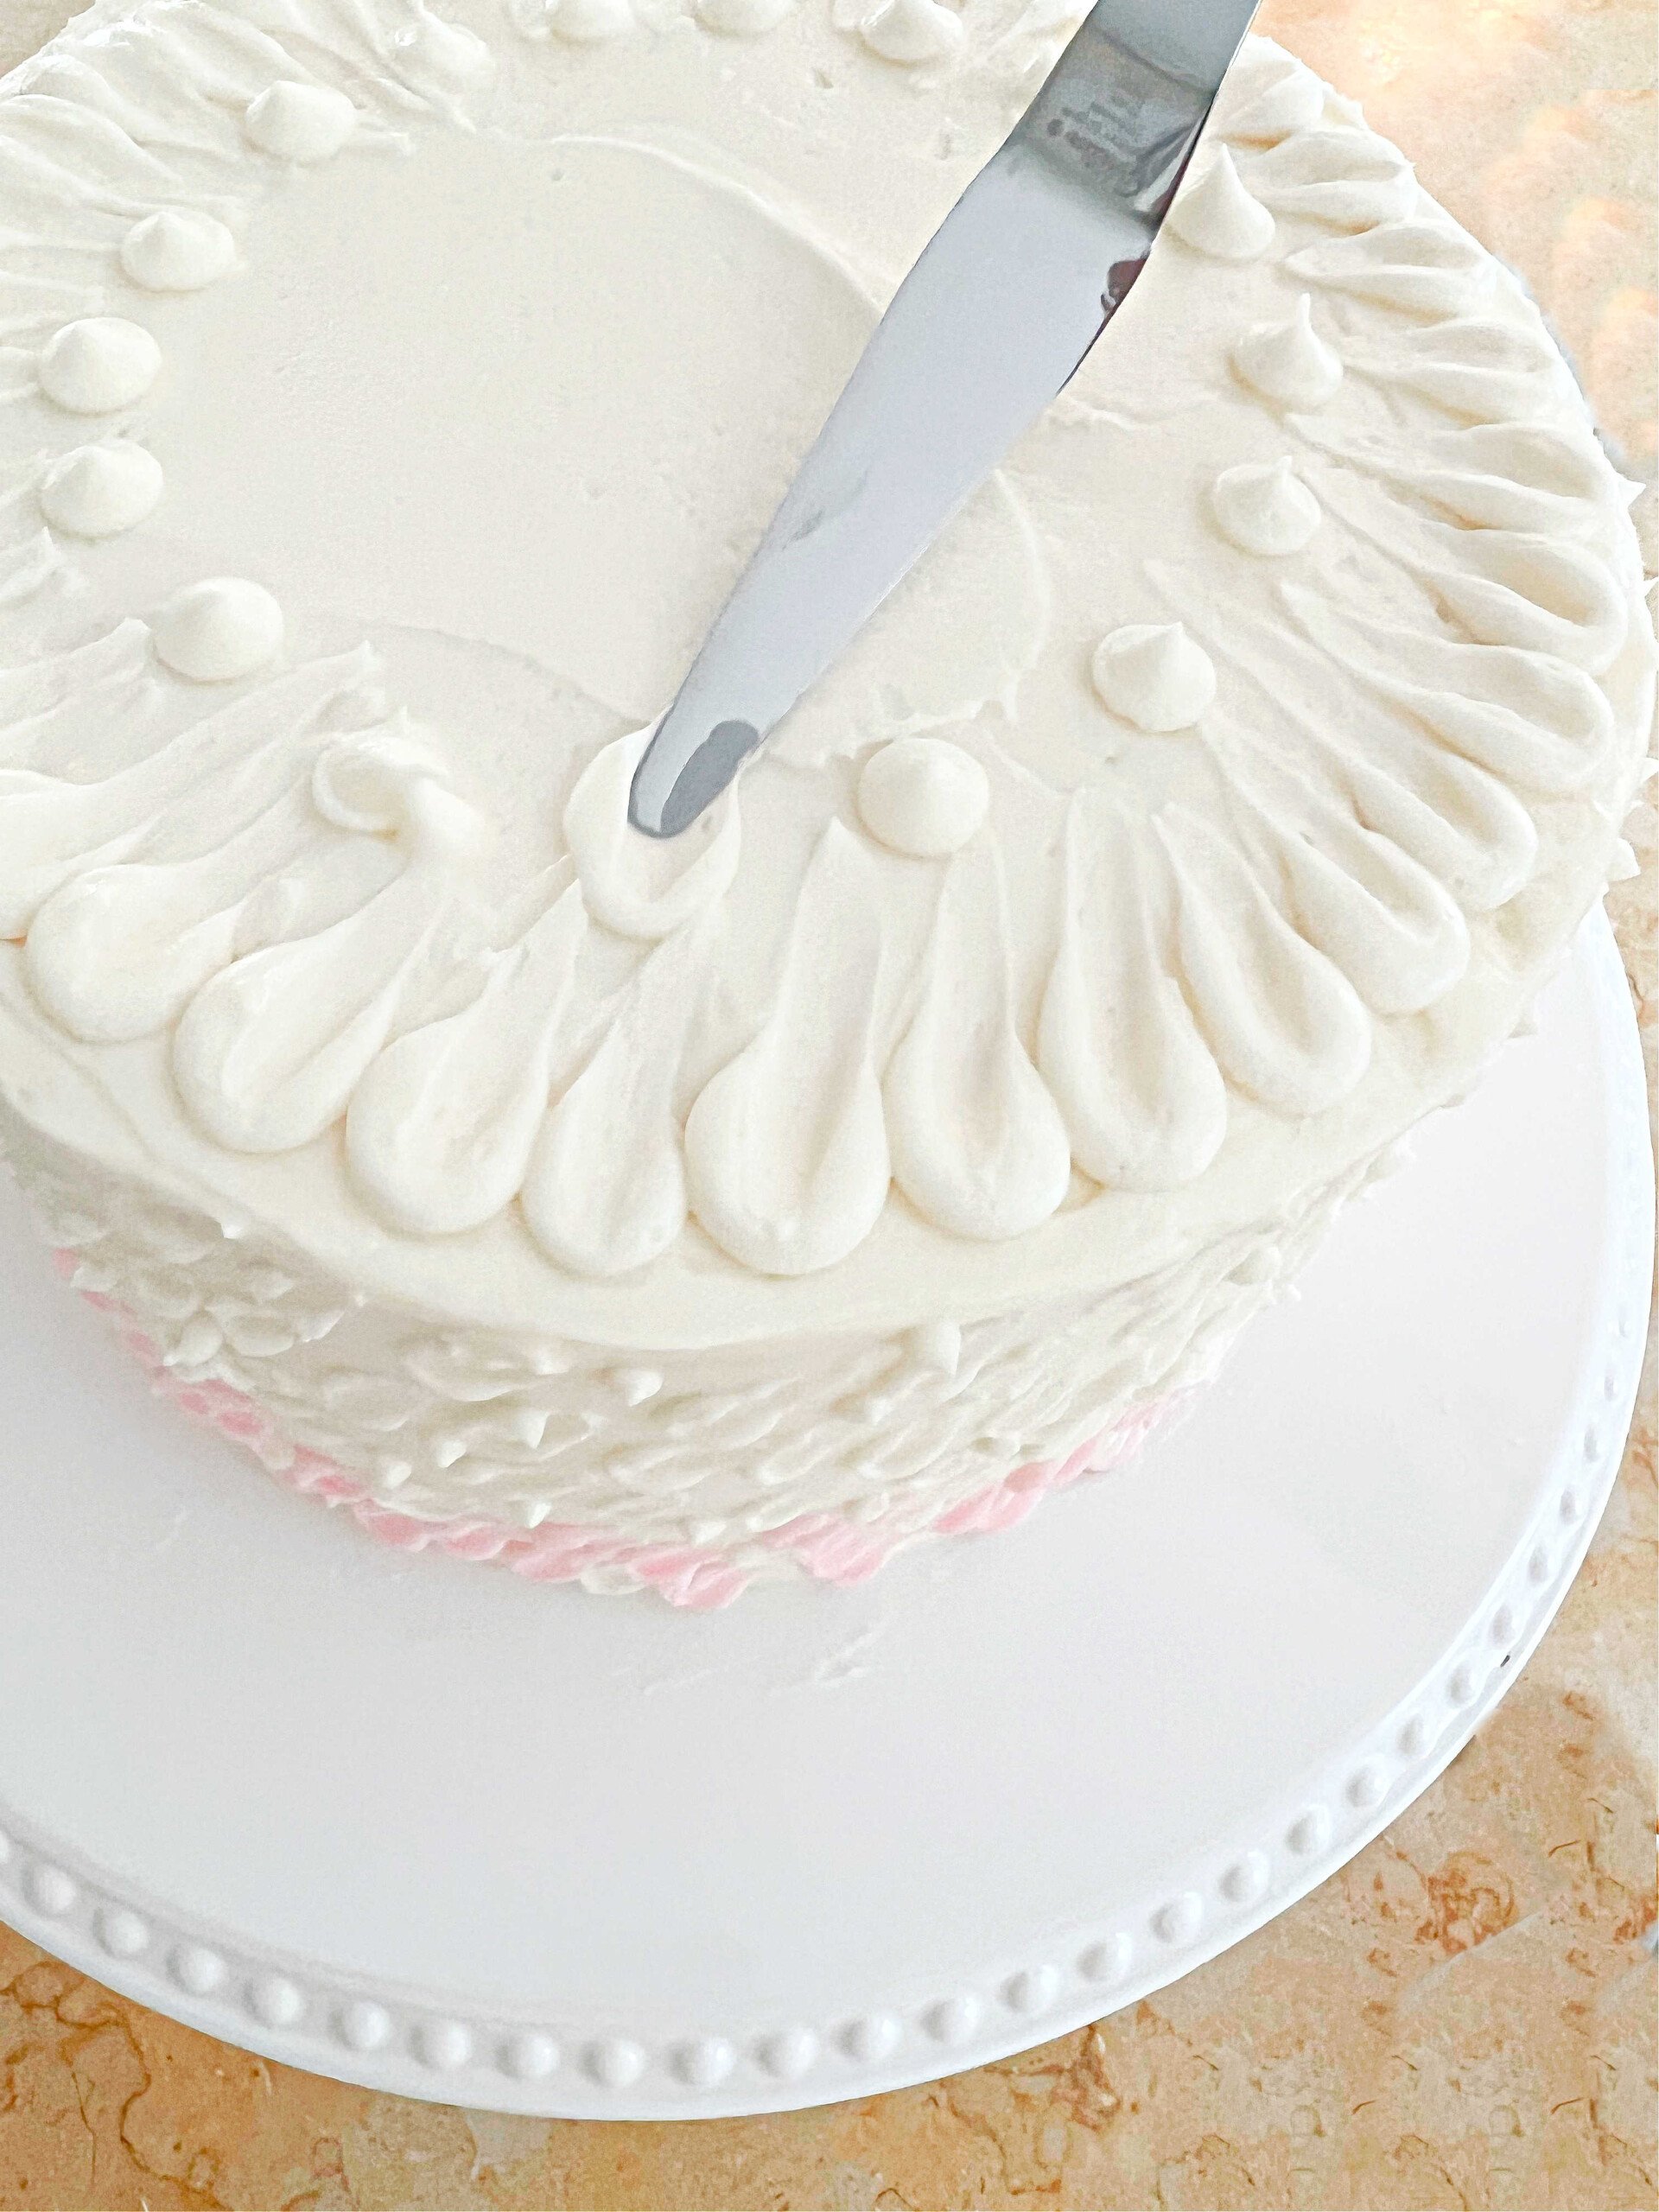 Decorating the Pink Velvet Cake.